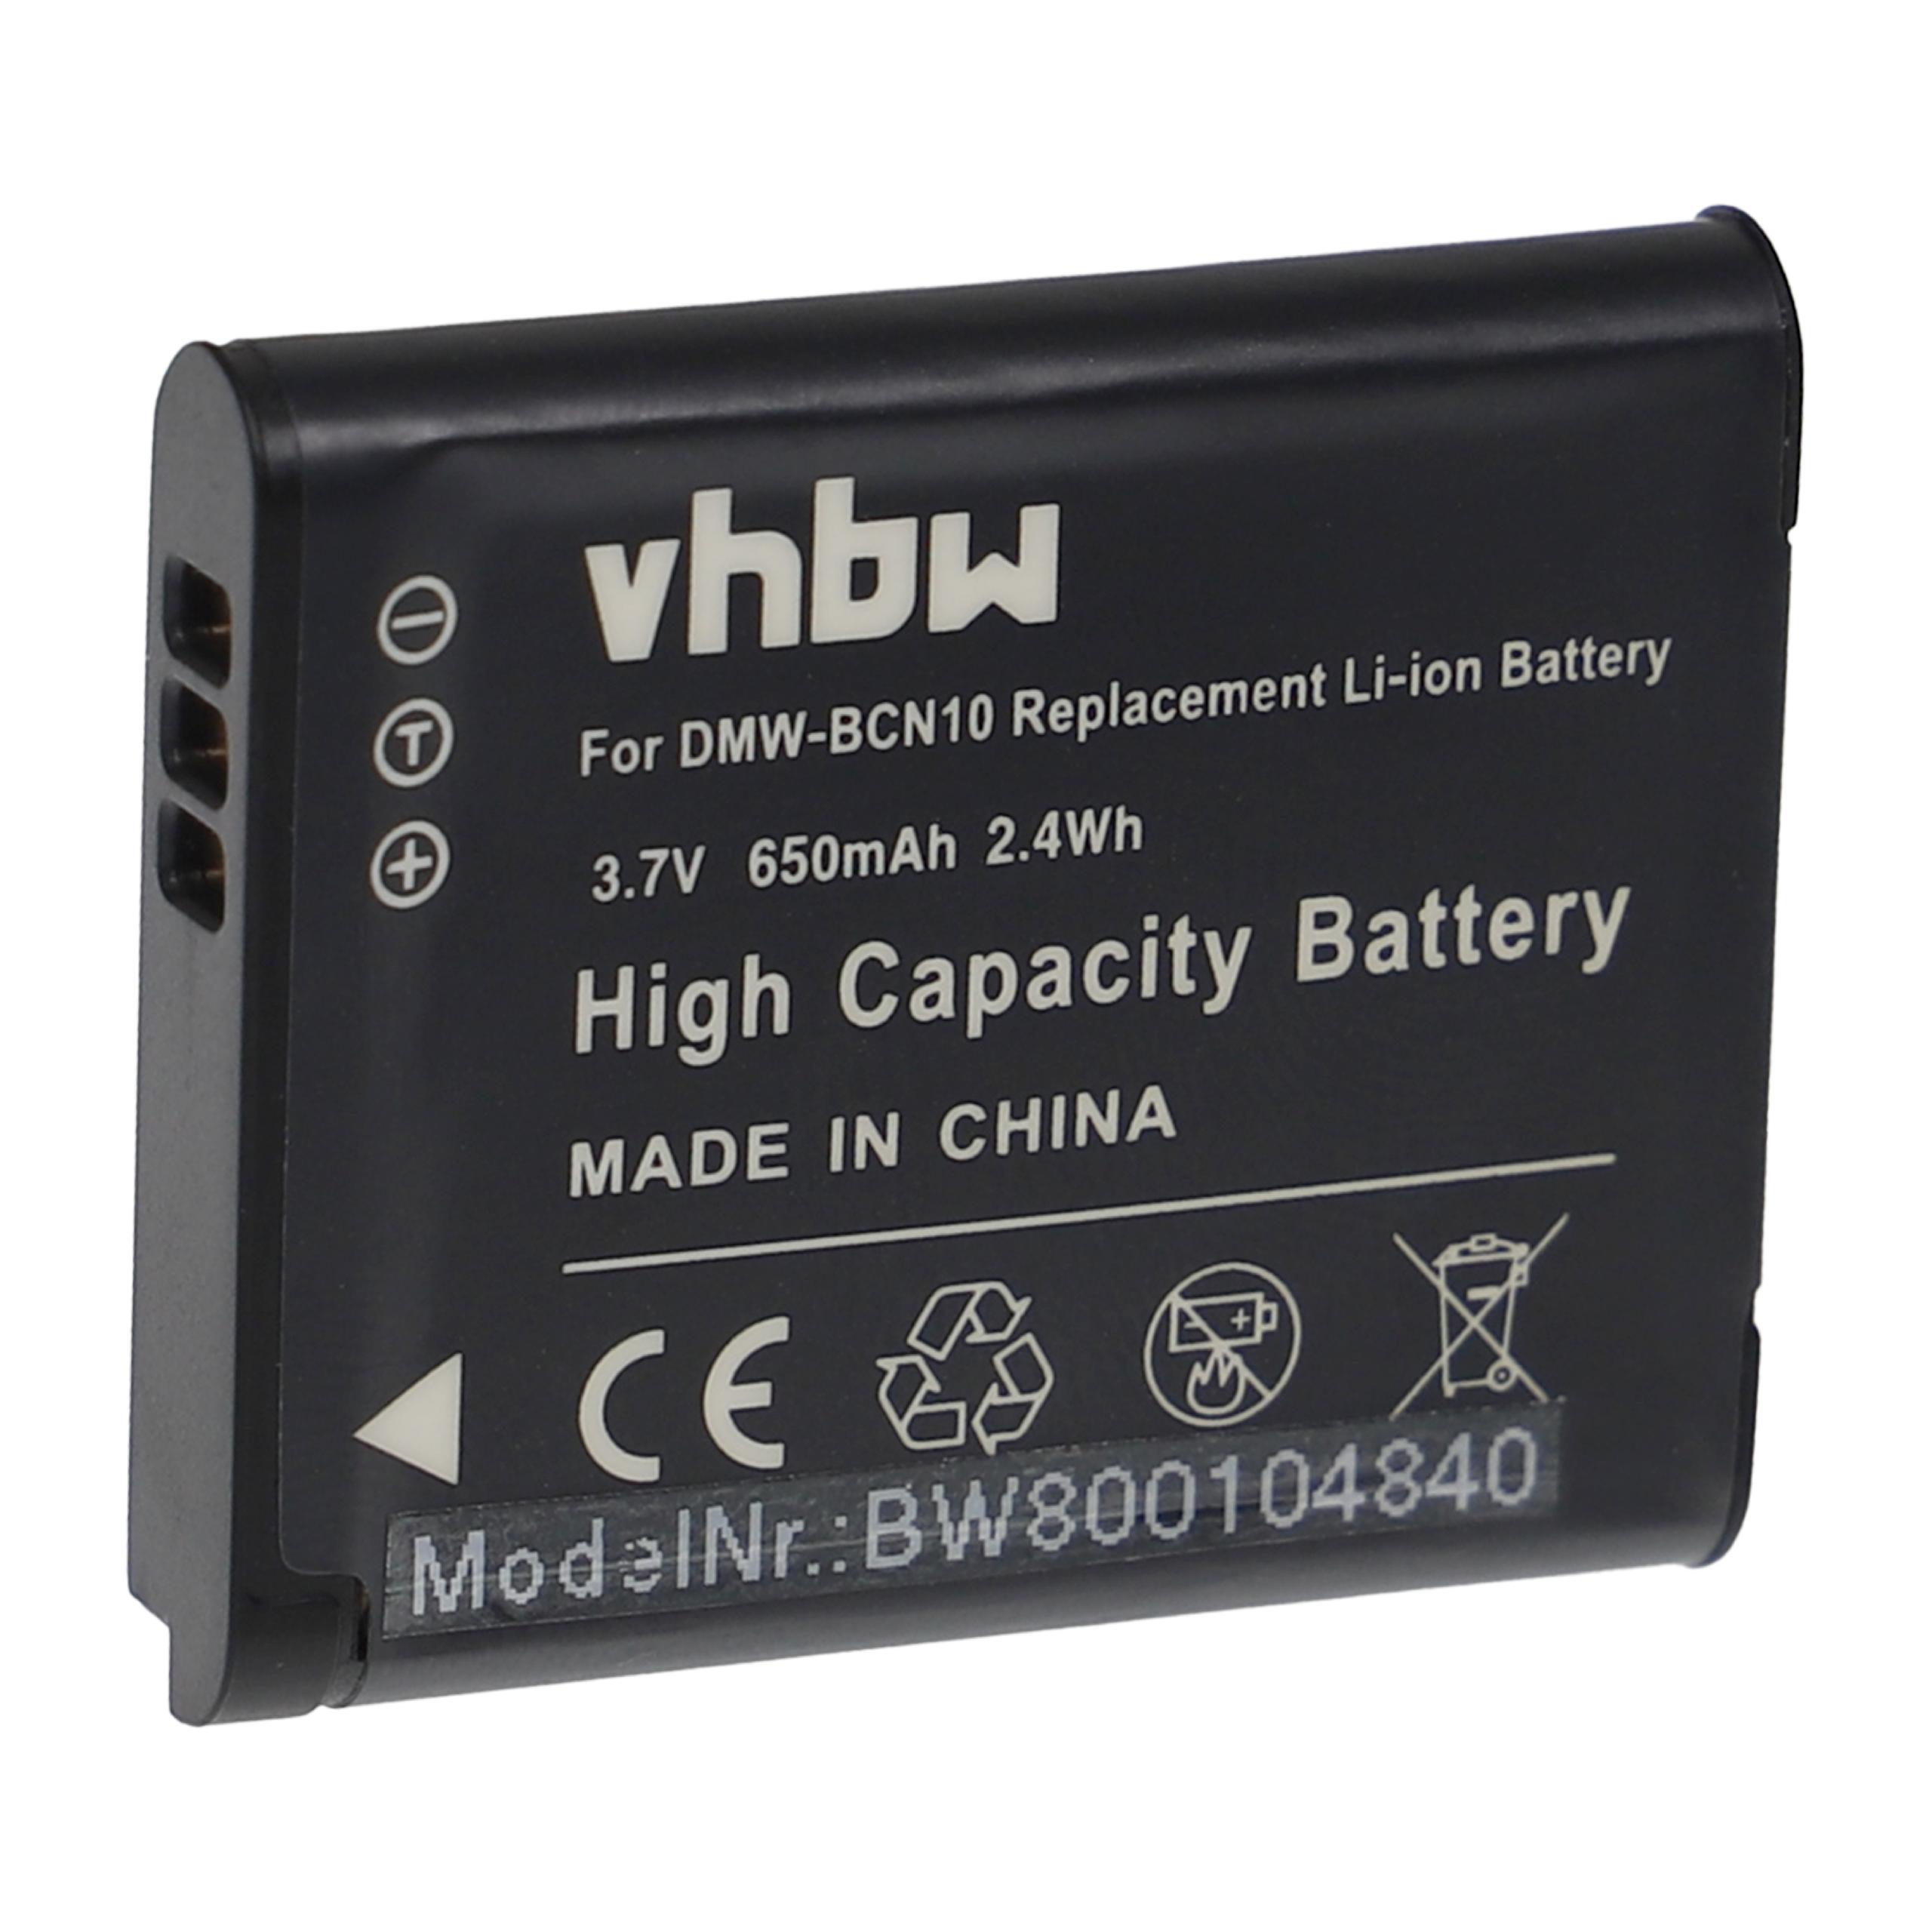 Batterie remplace Panasonic DMW-BCN10 pour appareil photo - 650mAh 3,7V Li-ion